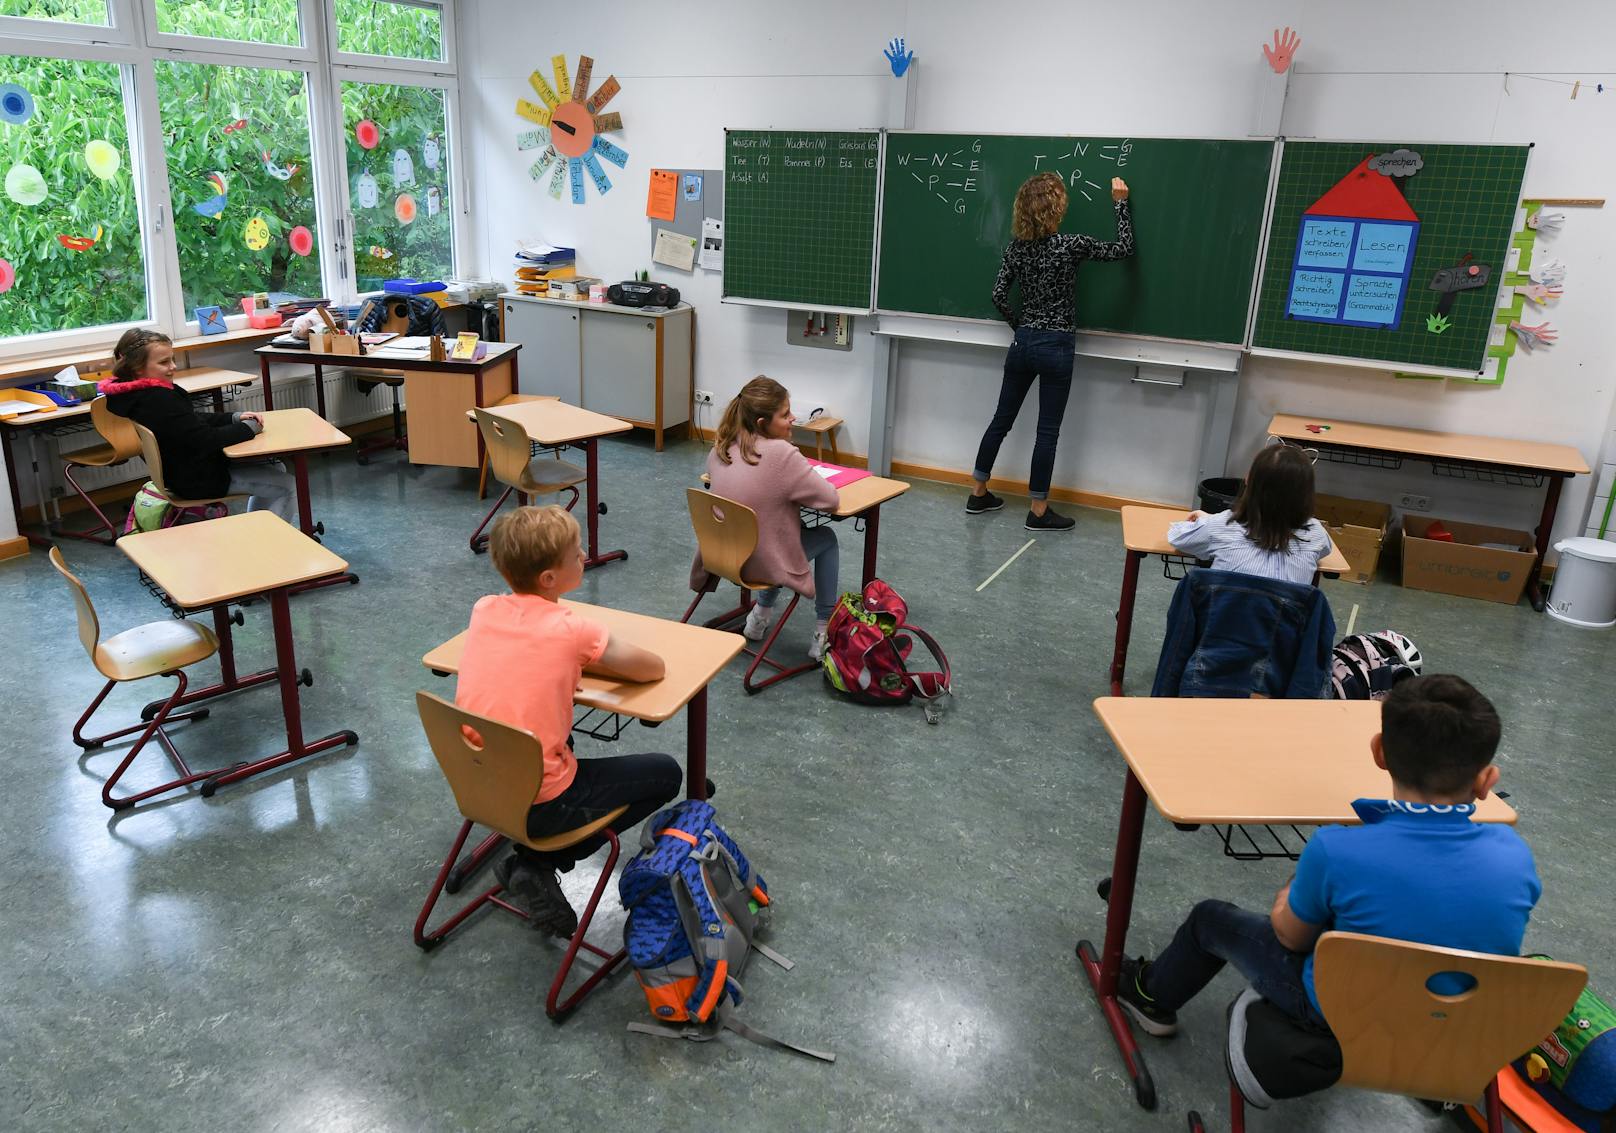 "Gendern" im Unterricht soll laut der FPÖ gestoppt werden.